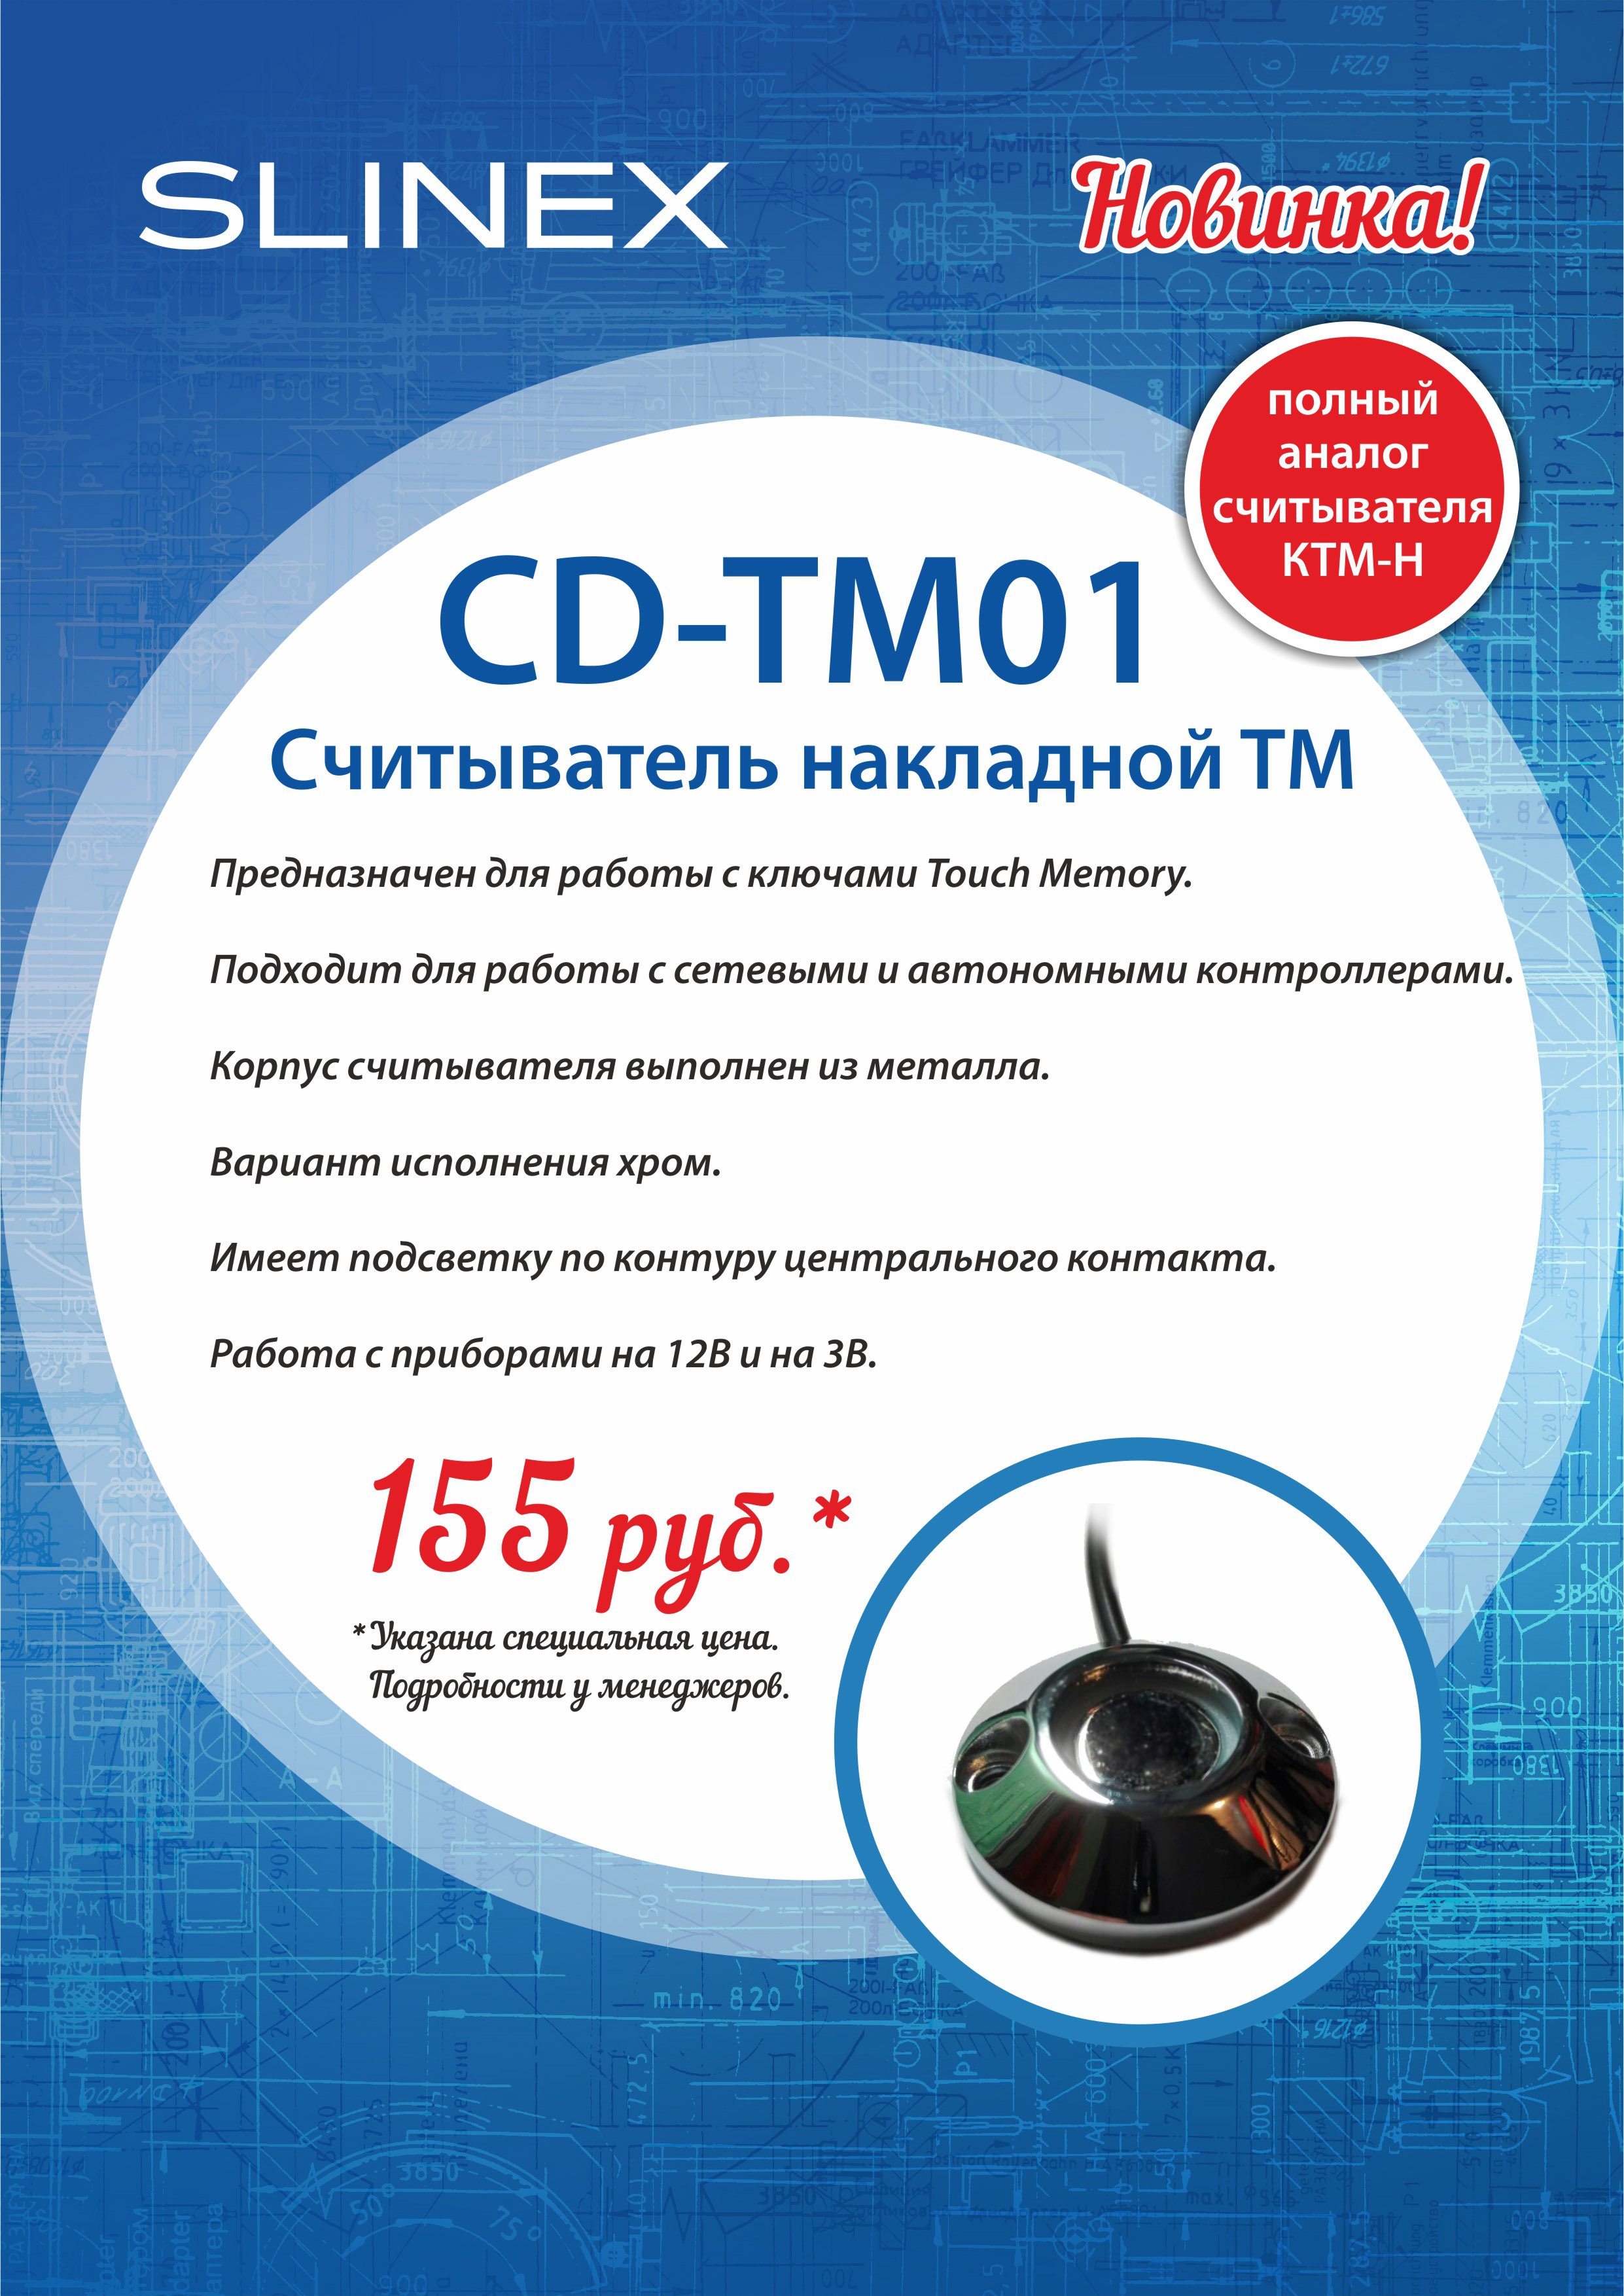 CD-TM01